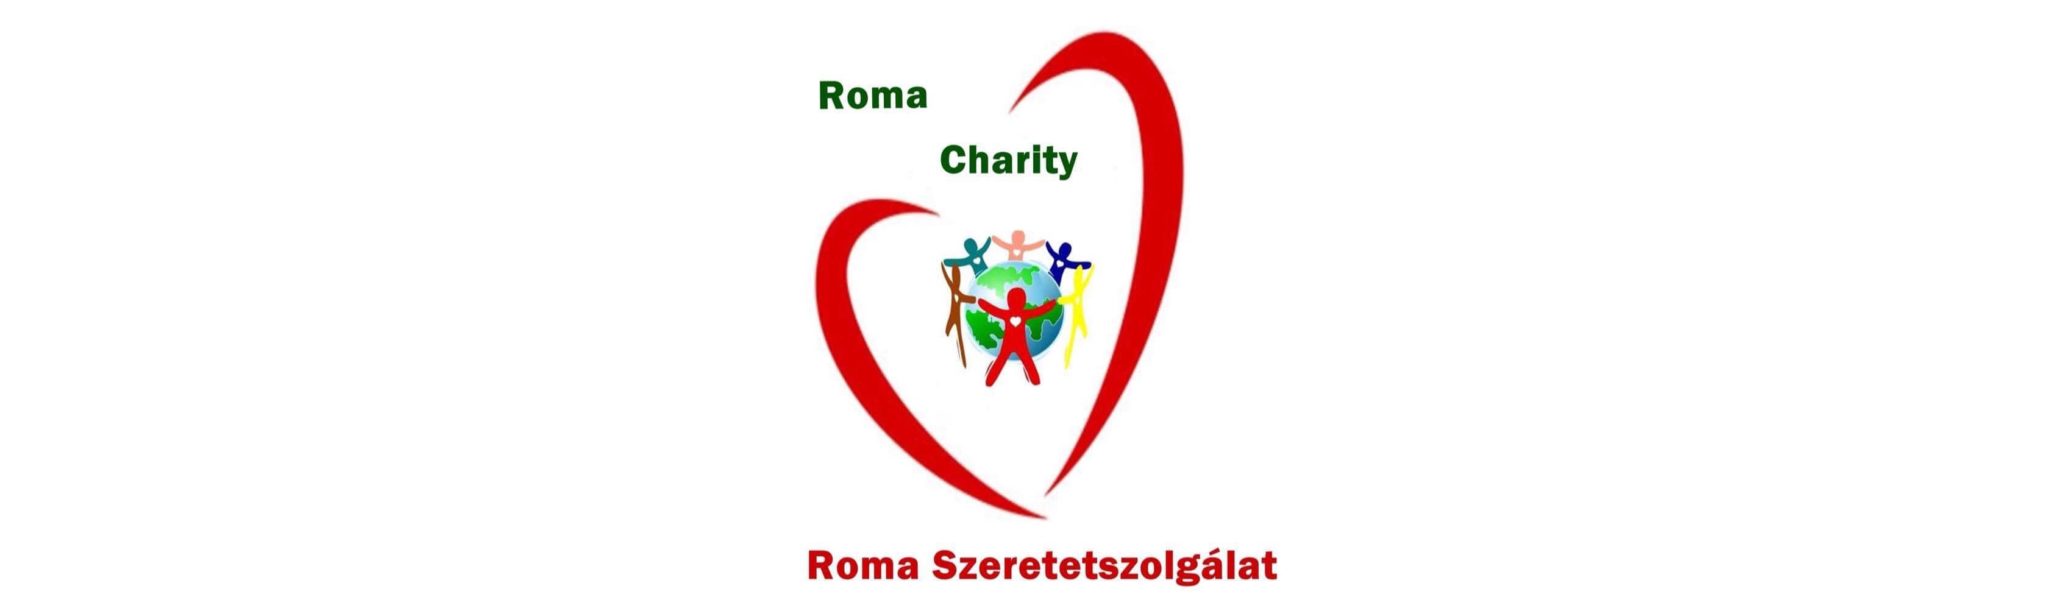 Roma szeretetszolgálat